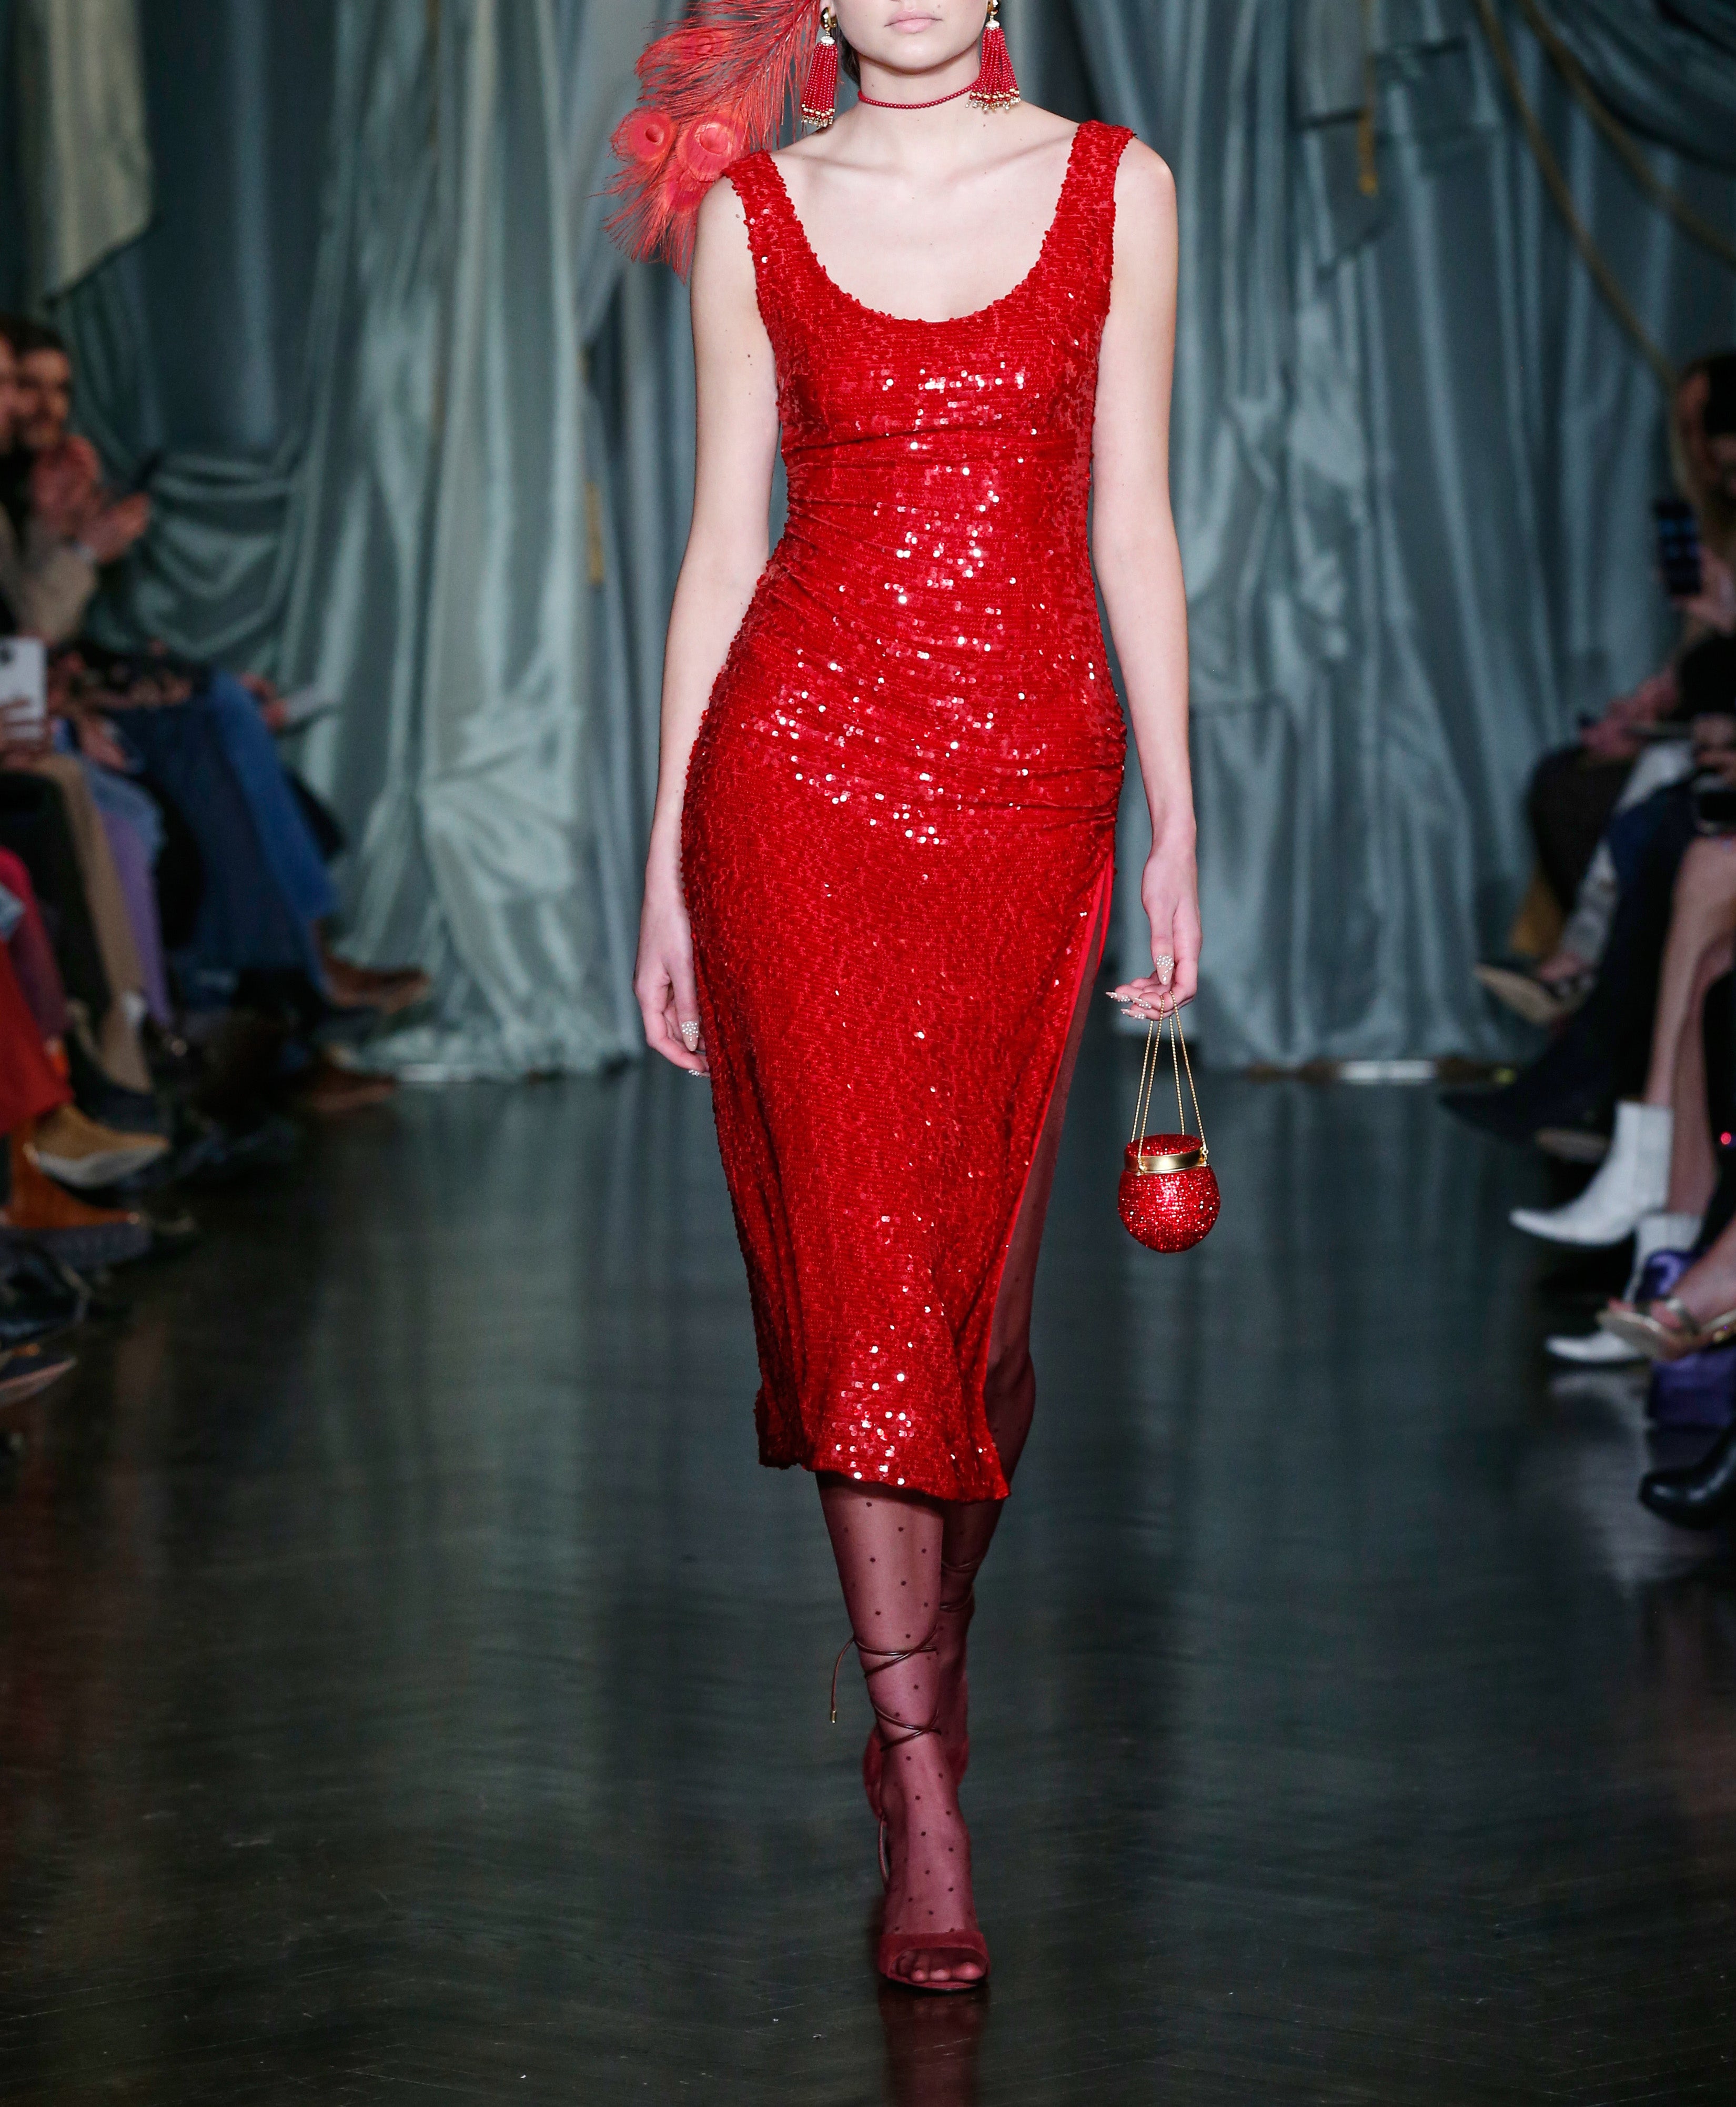 Deanna Red Sequin Dress